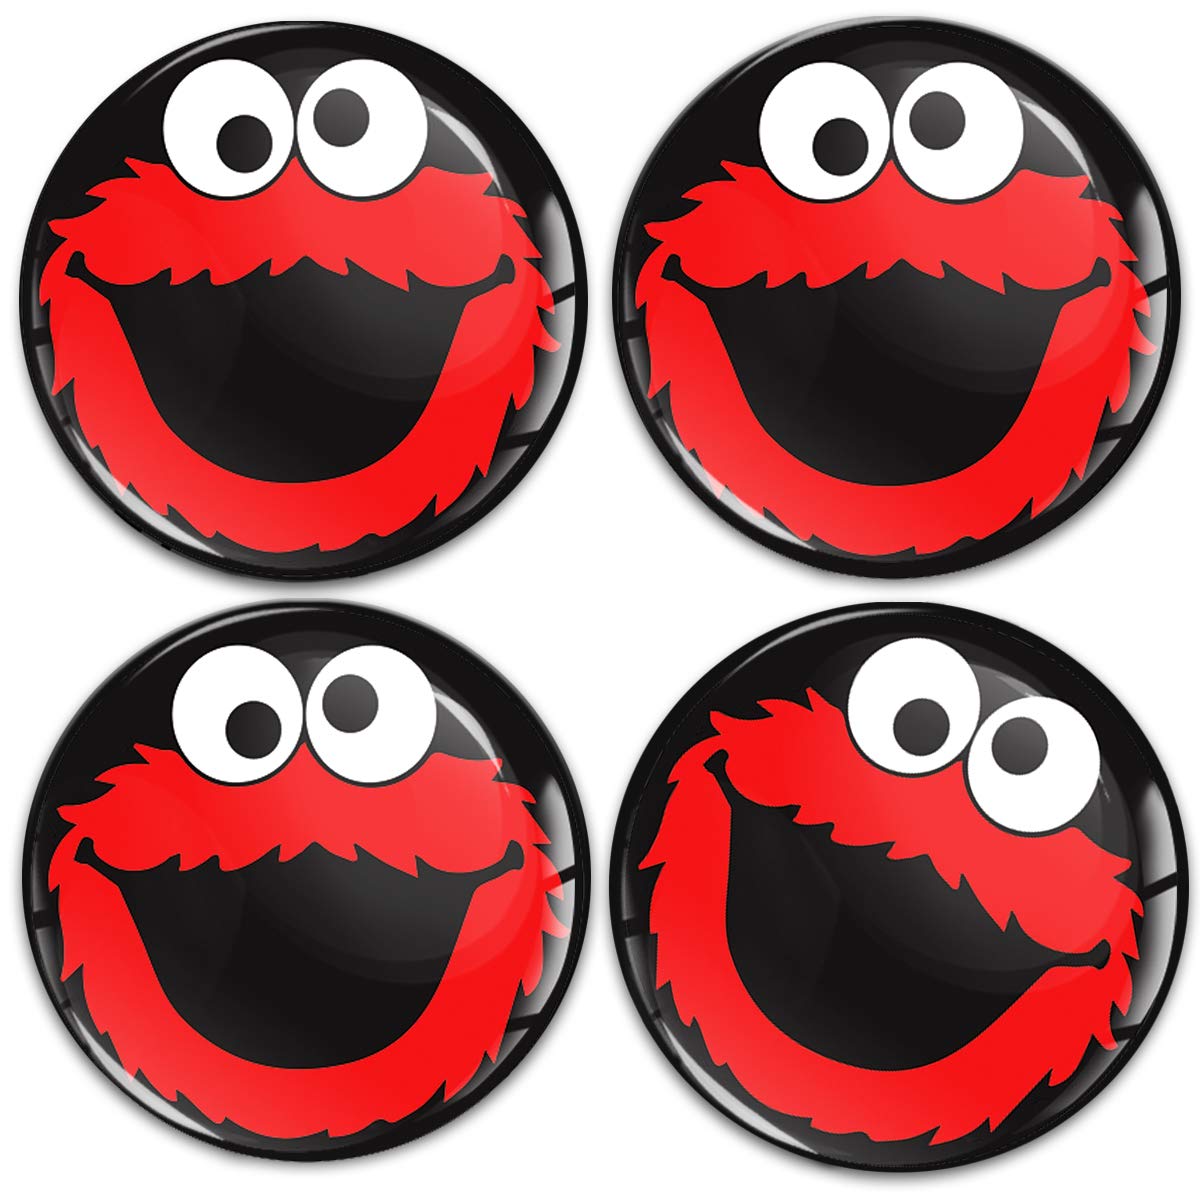 SkinoEu Aufkleber Autoaufkleber für Radkappen Nabenkappen Nabendeckel Radnabendeckel Rad-Aufkleber 50mm Schwarz Rot Elmo Cookie Monster A 5950 von SkinoEu